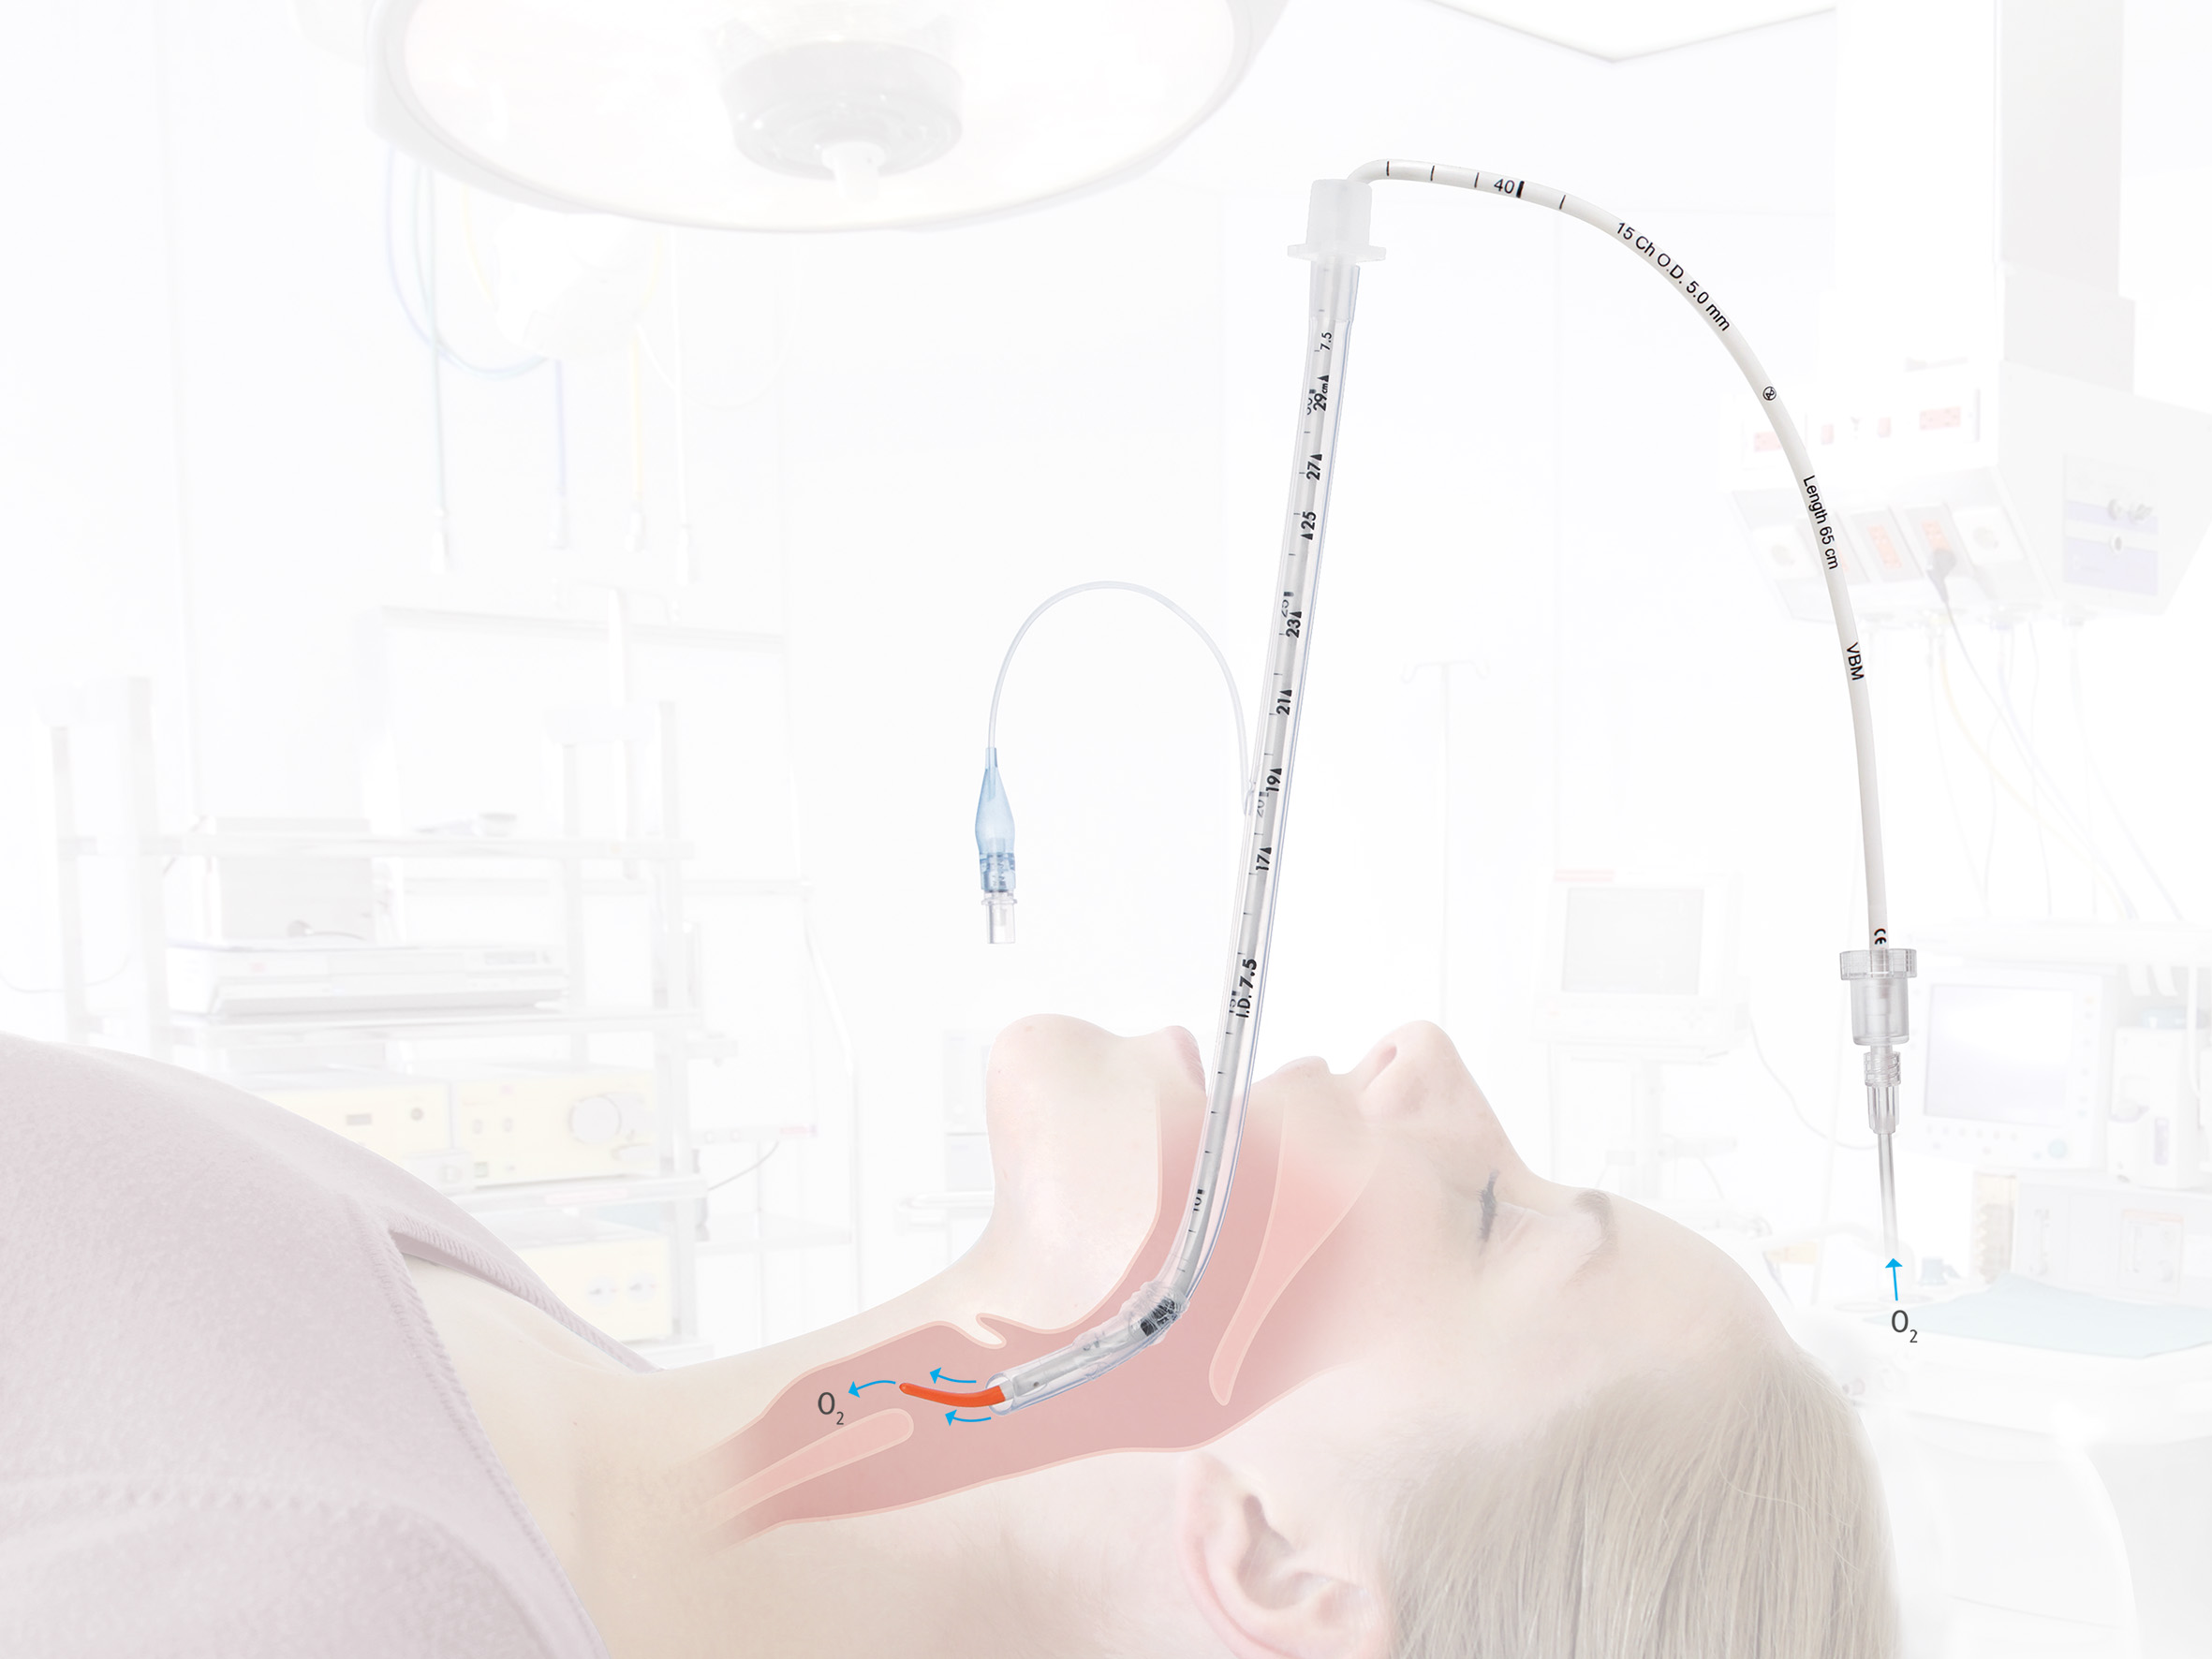 S-Guide Intubationshilfe mit O2-Konnektor - Packung à 5 Stück